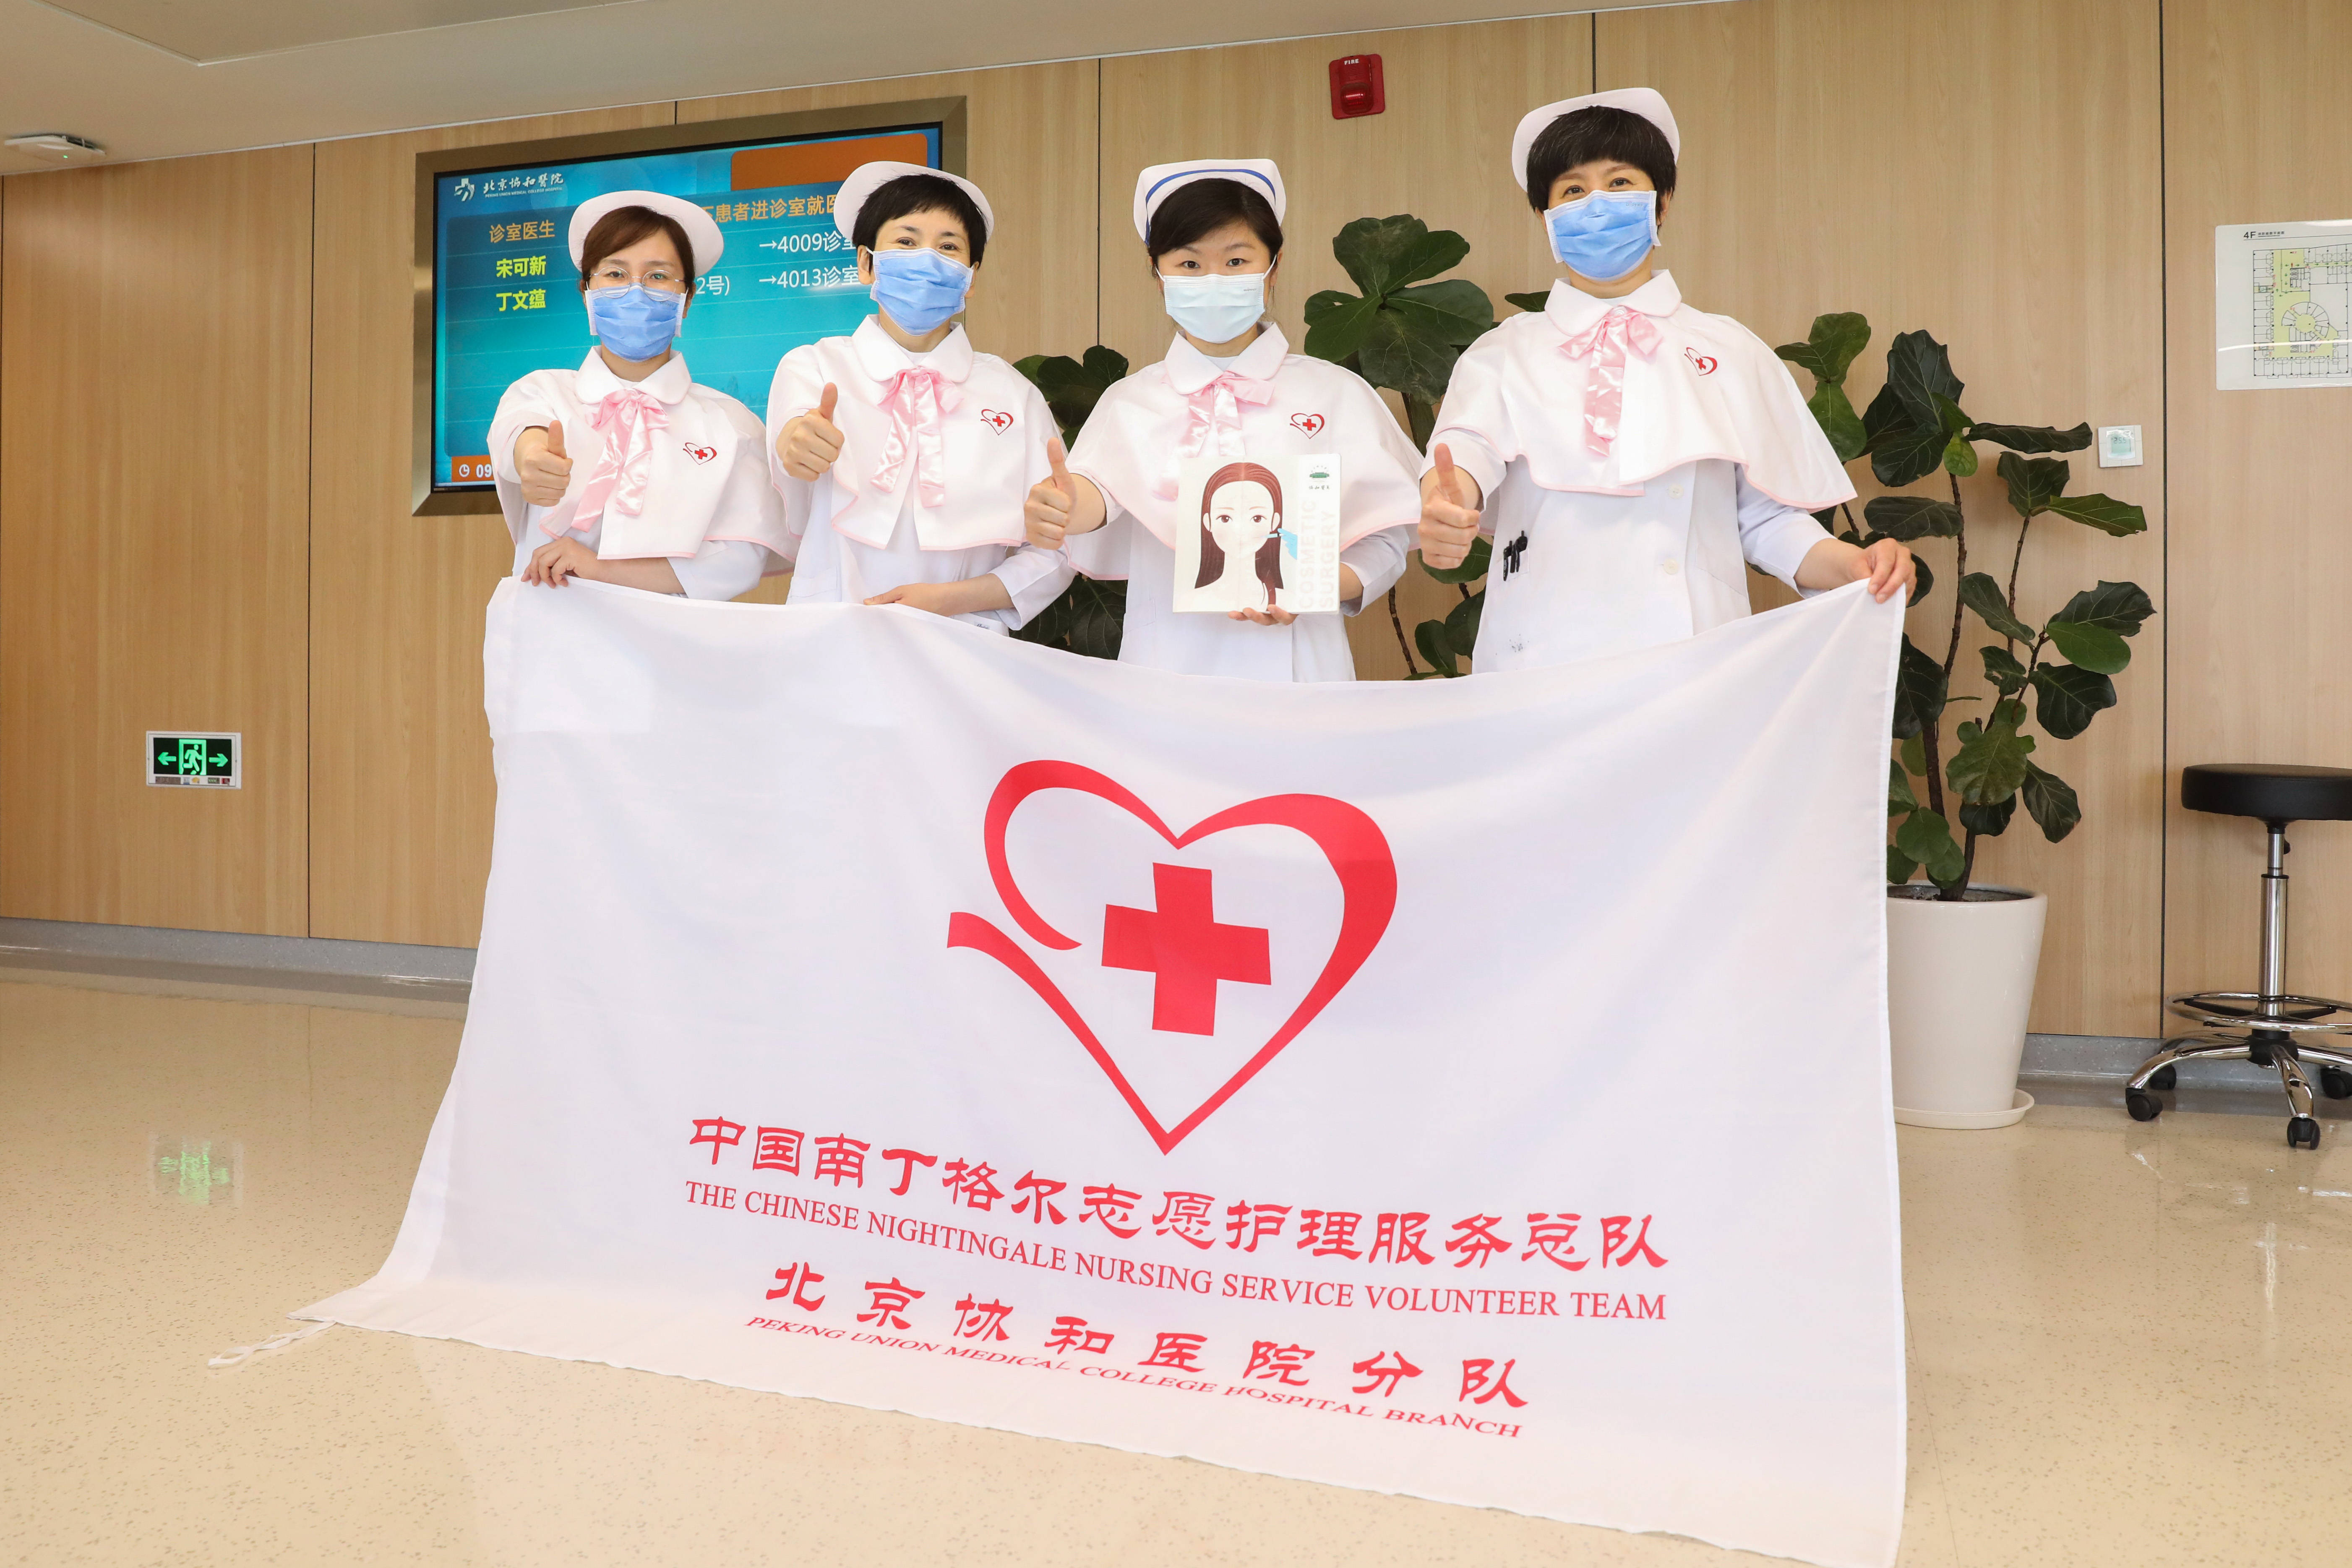 北京协和医院整形美容外科南丁格尔护理志愿服务队部分成员合影